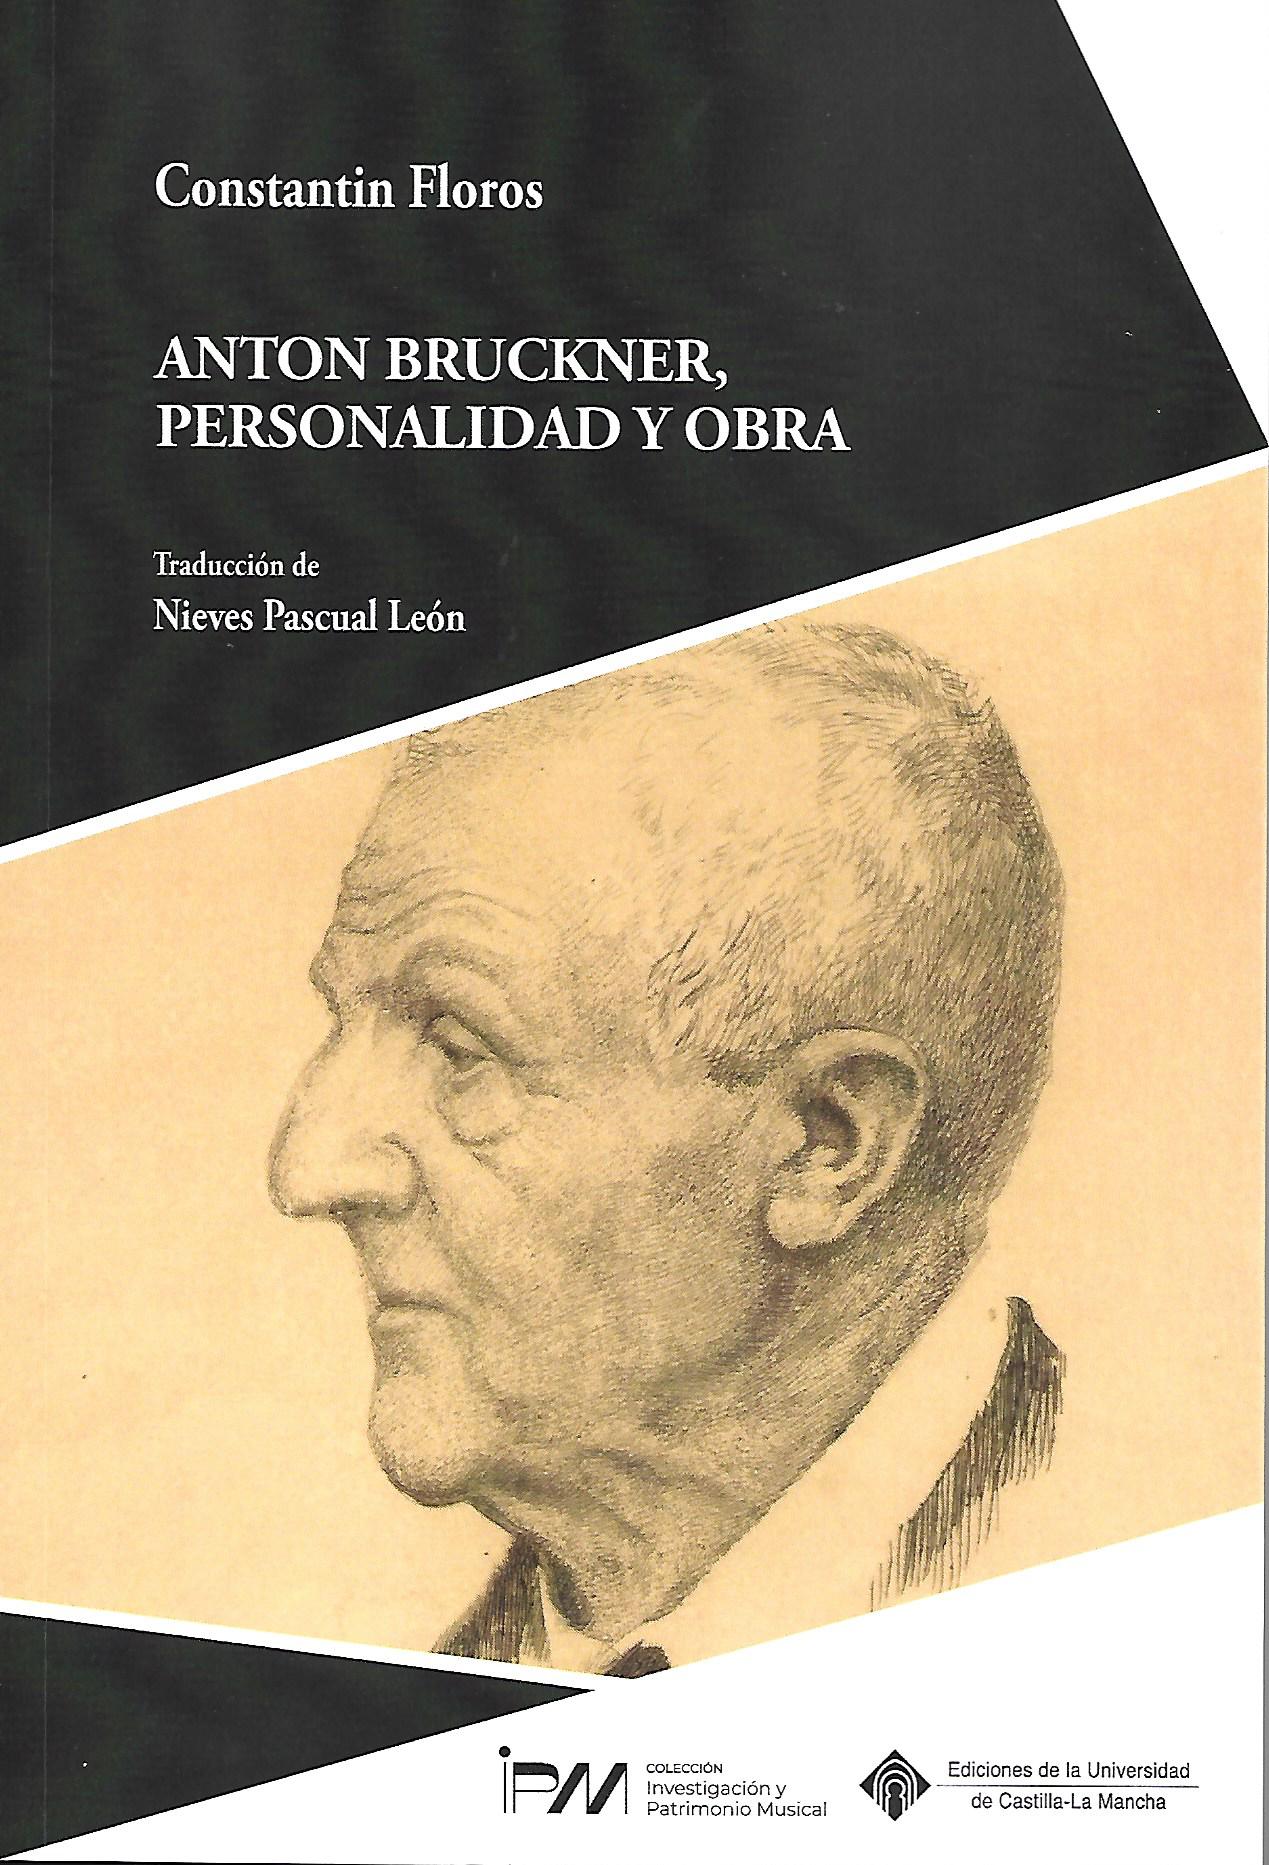 Bruckner segons Constantin Floros